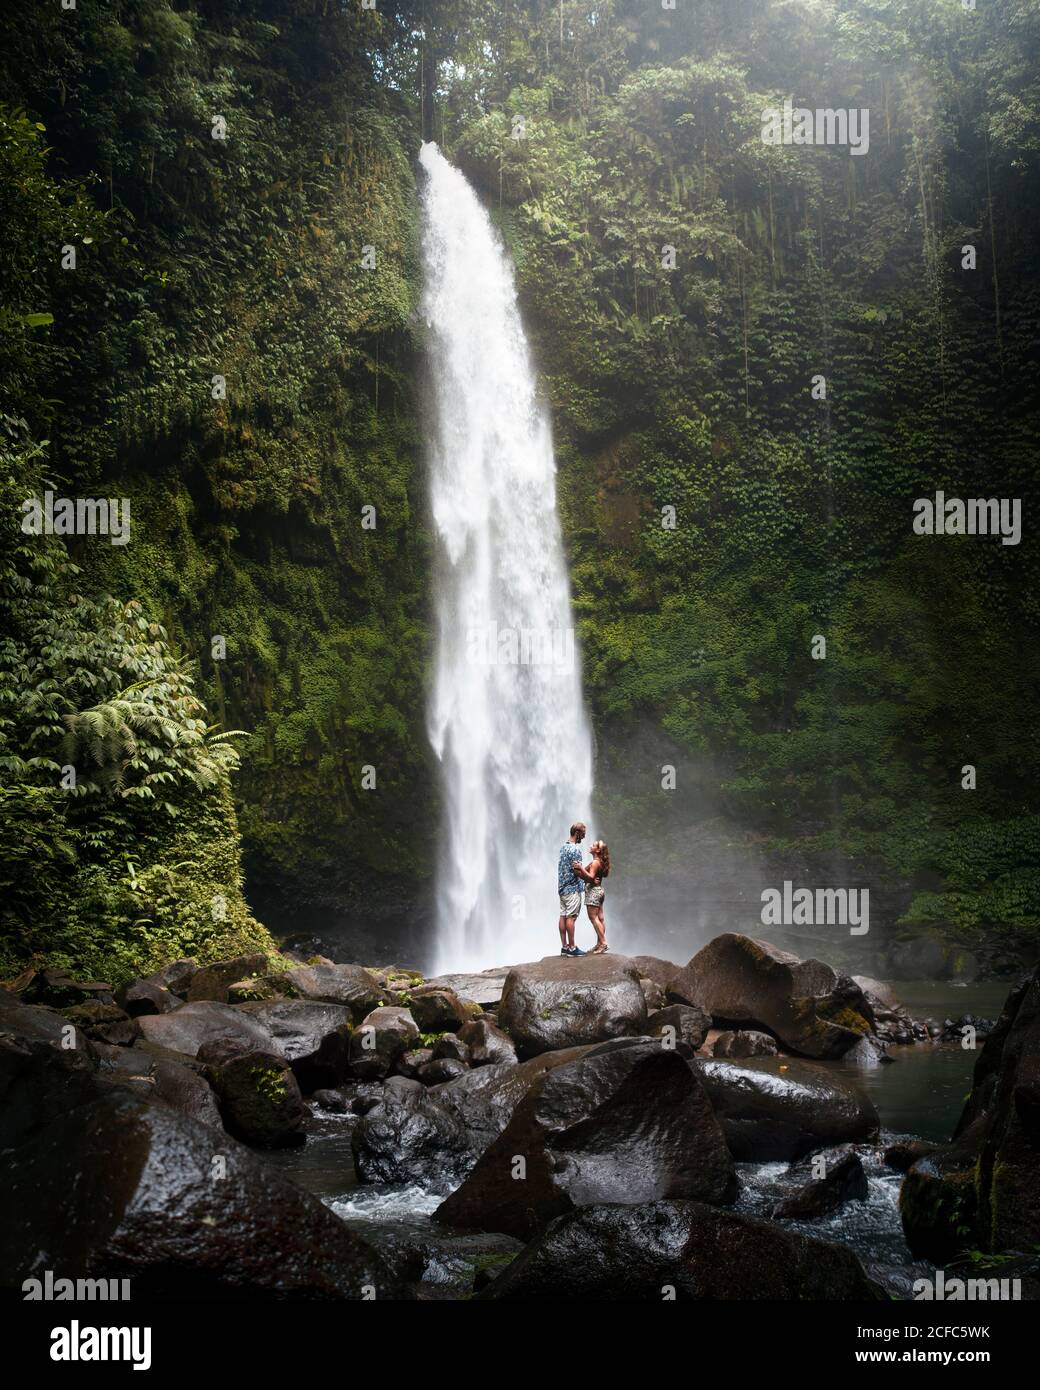 Seitenansicht von zwei Reisenden in legerer Kleidung, die darin stehen Vorne von einander auf rauem Felsen in der Nähe mächtig hoch Wasserfall zwischen grünen tropischen Pflanzen in Indonesien Stockfoto